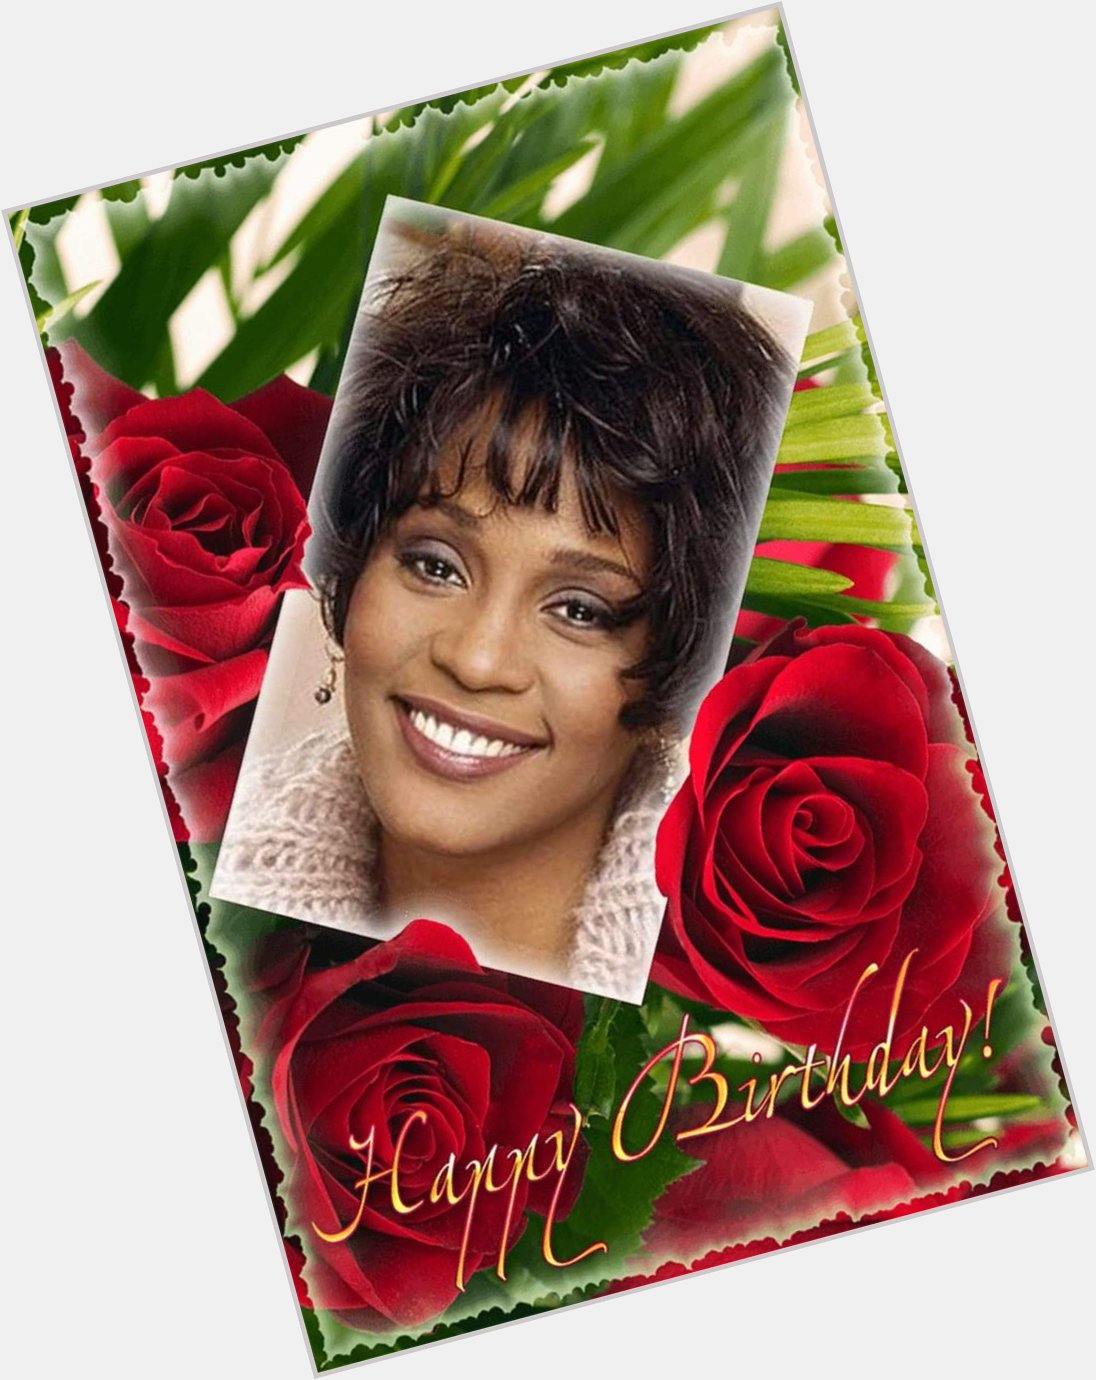 Happy Heavenly Birthday Whitney Houston!!! 